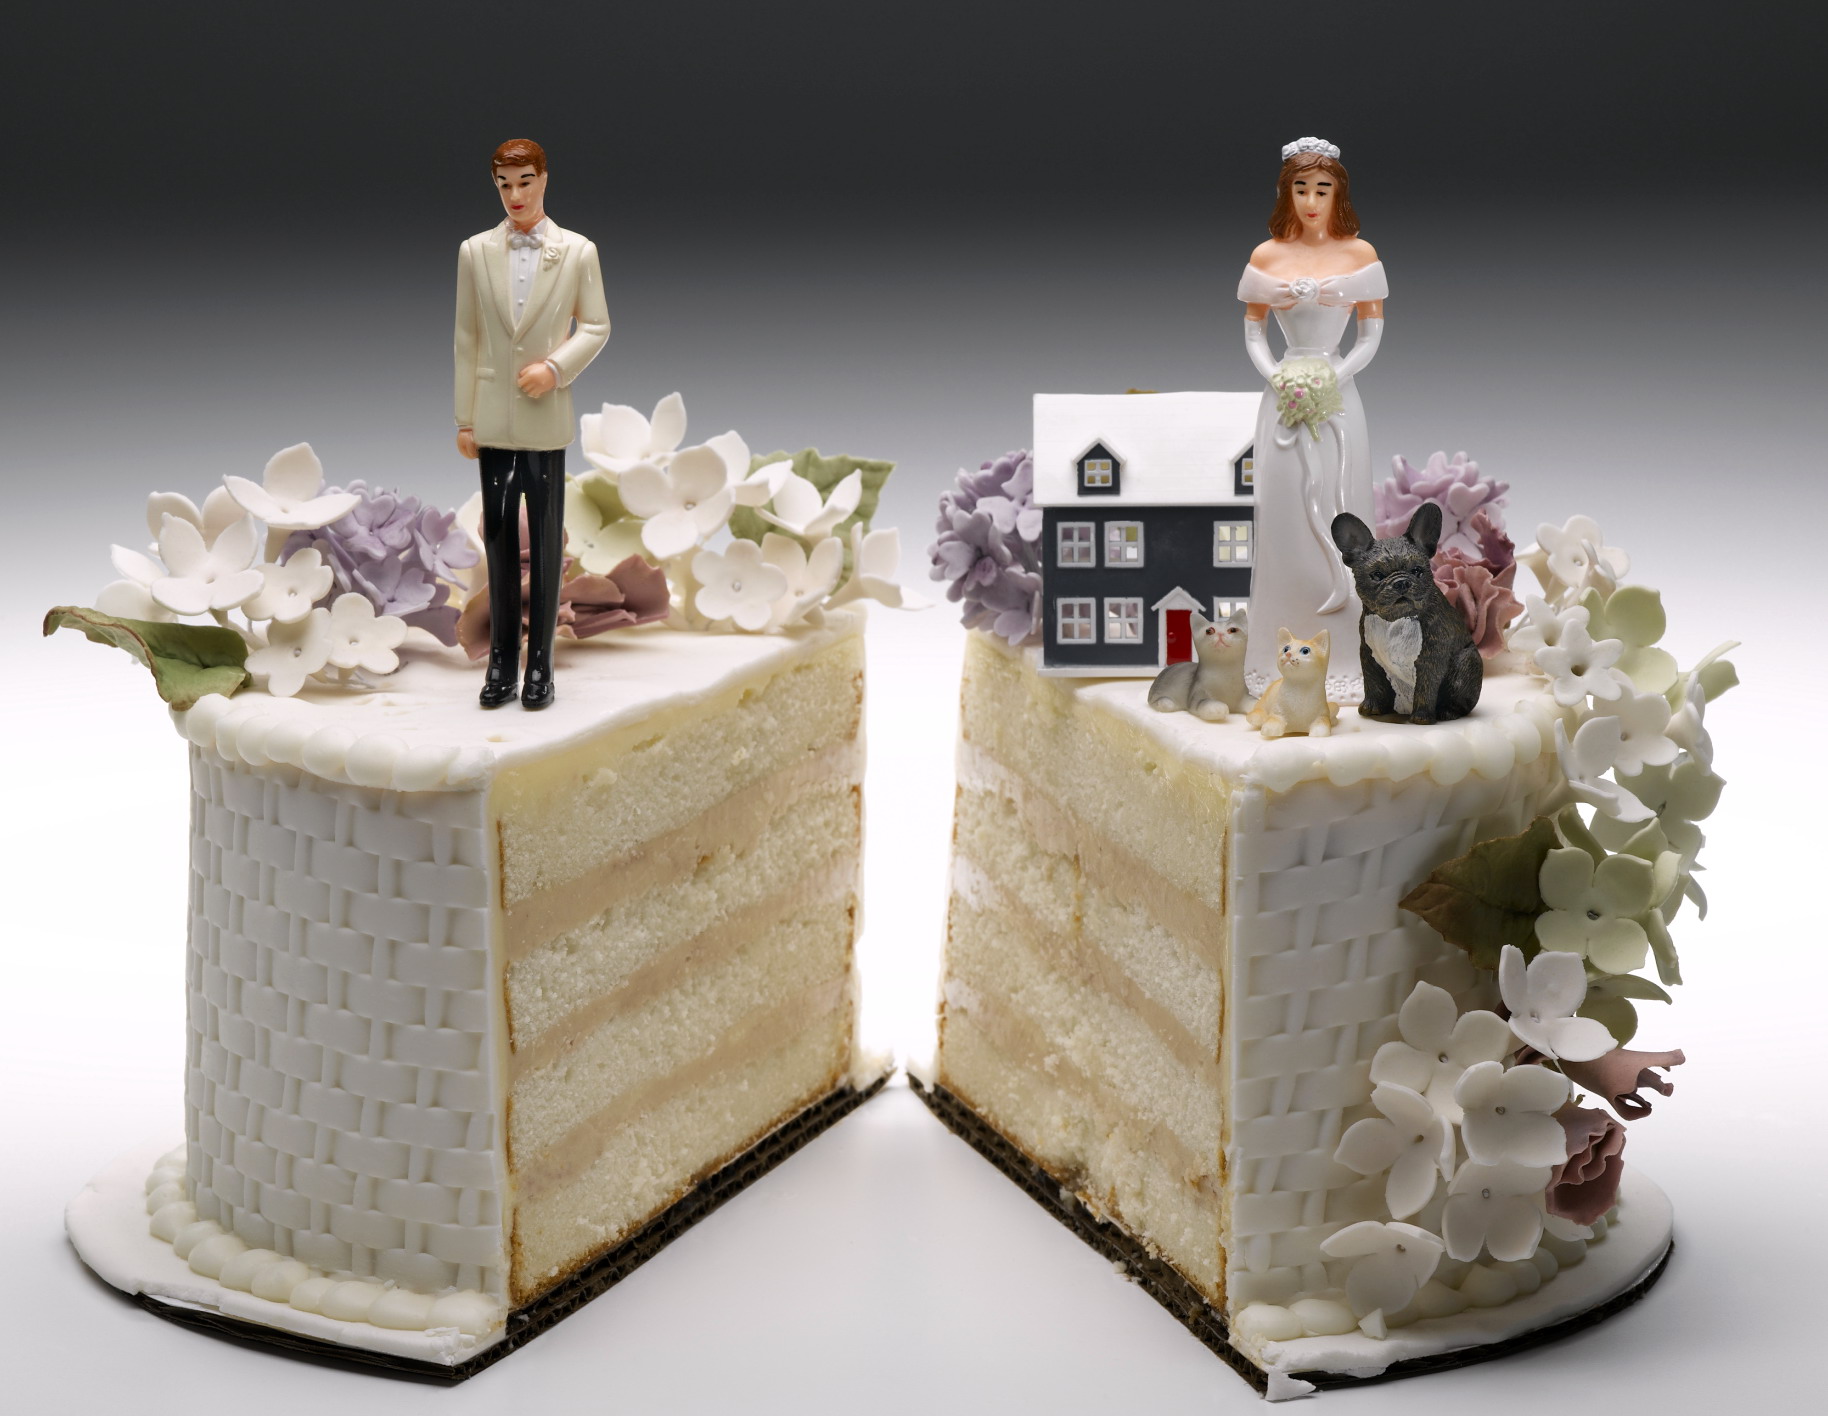 Il divorzio nuoce gravemente alla salute